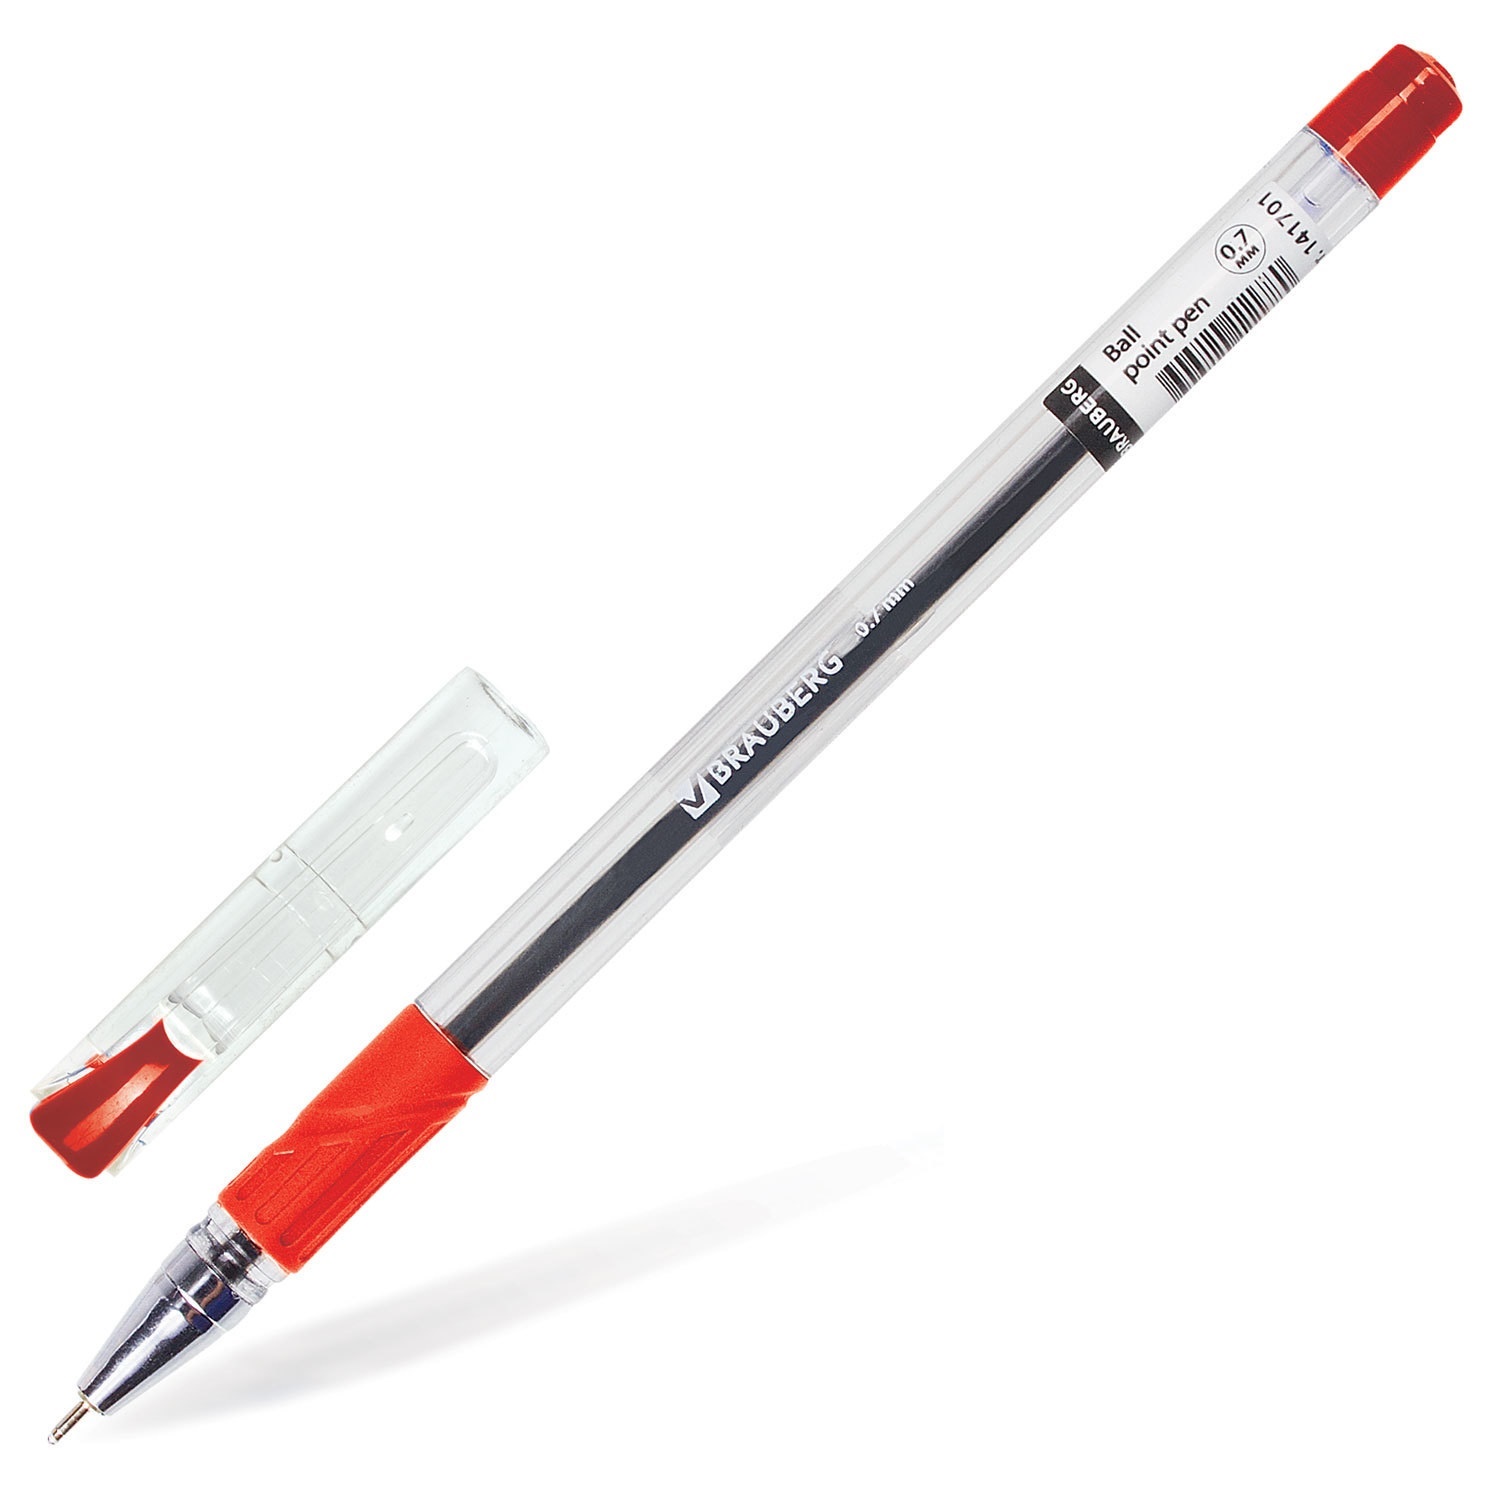 Brauberg 0.7. Ручка БРАУБЕРГ 0.7. Ручка БРАУБЕРГ 0.7 масляная. Красная ручка БРАУБЕРГ. Ручки БРАУБЕРГ 0.7 мм.